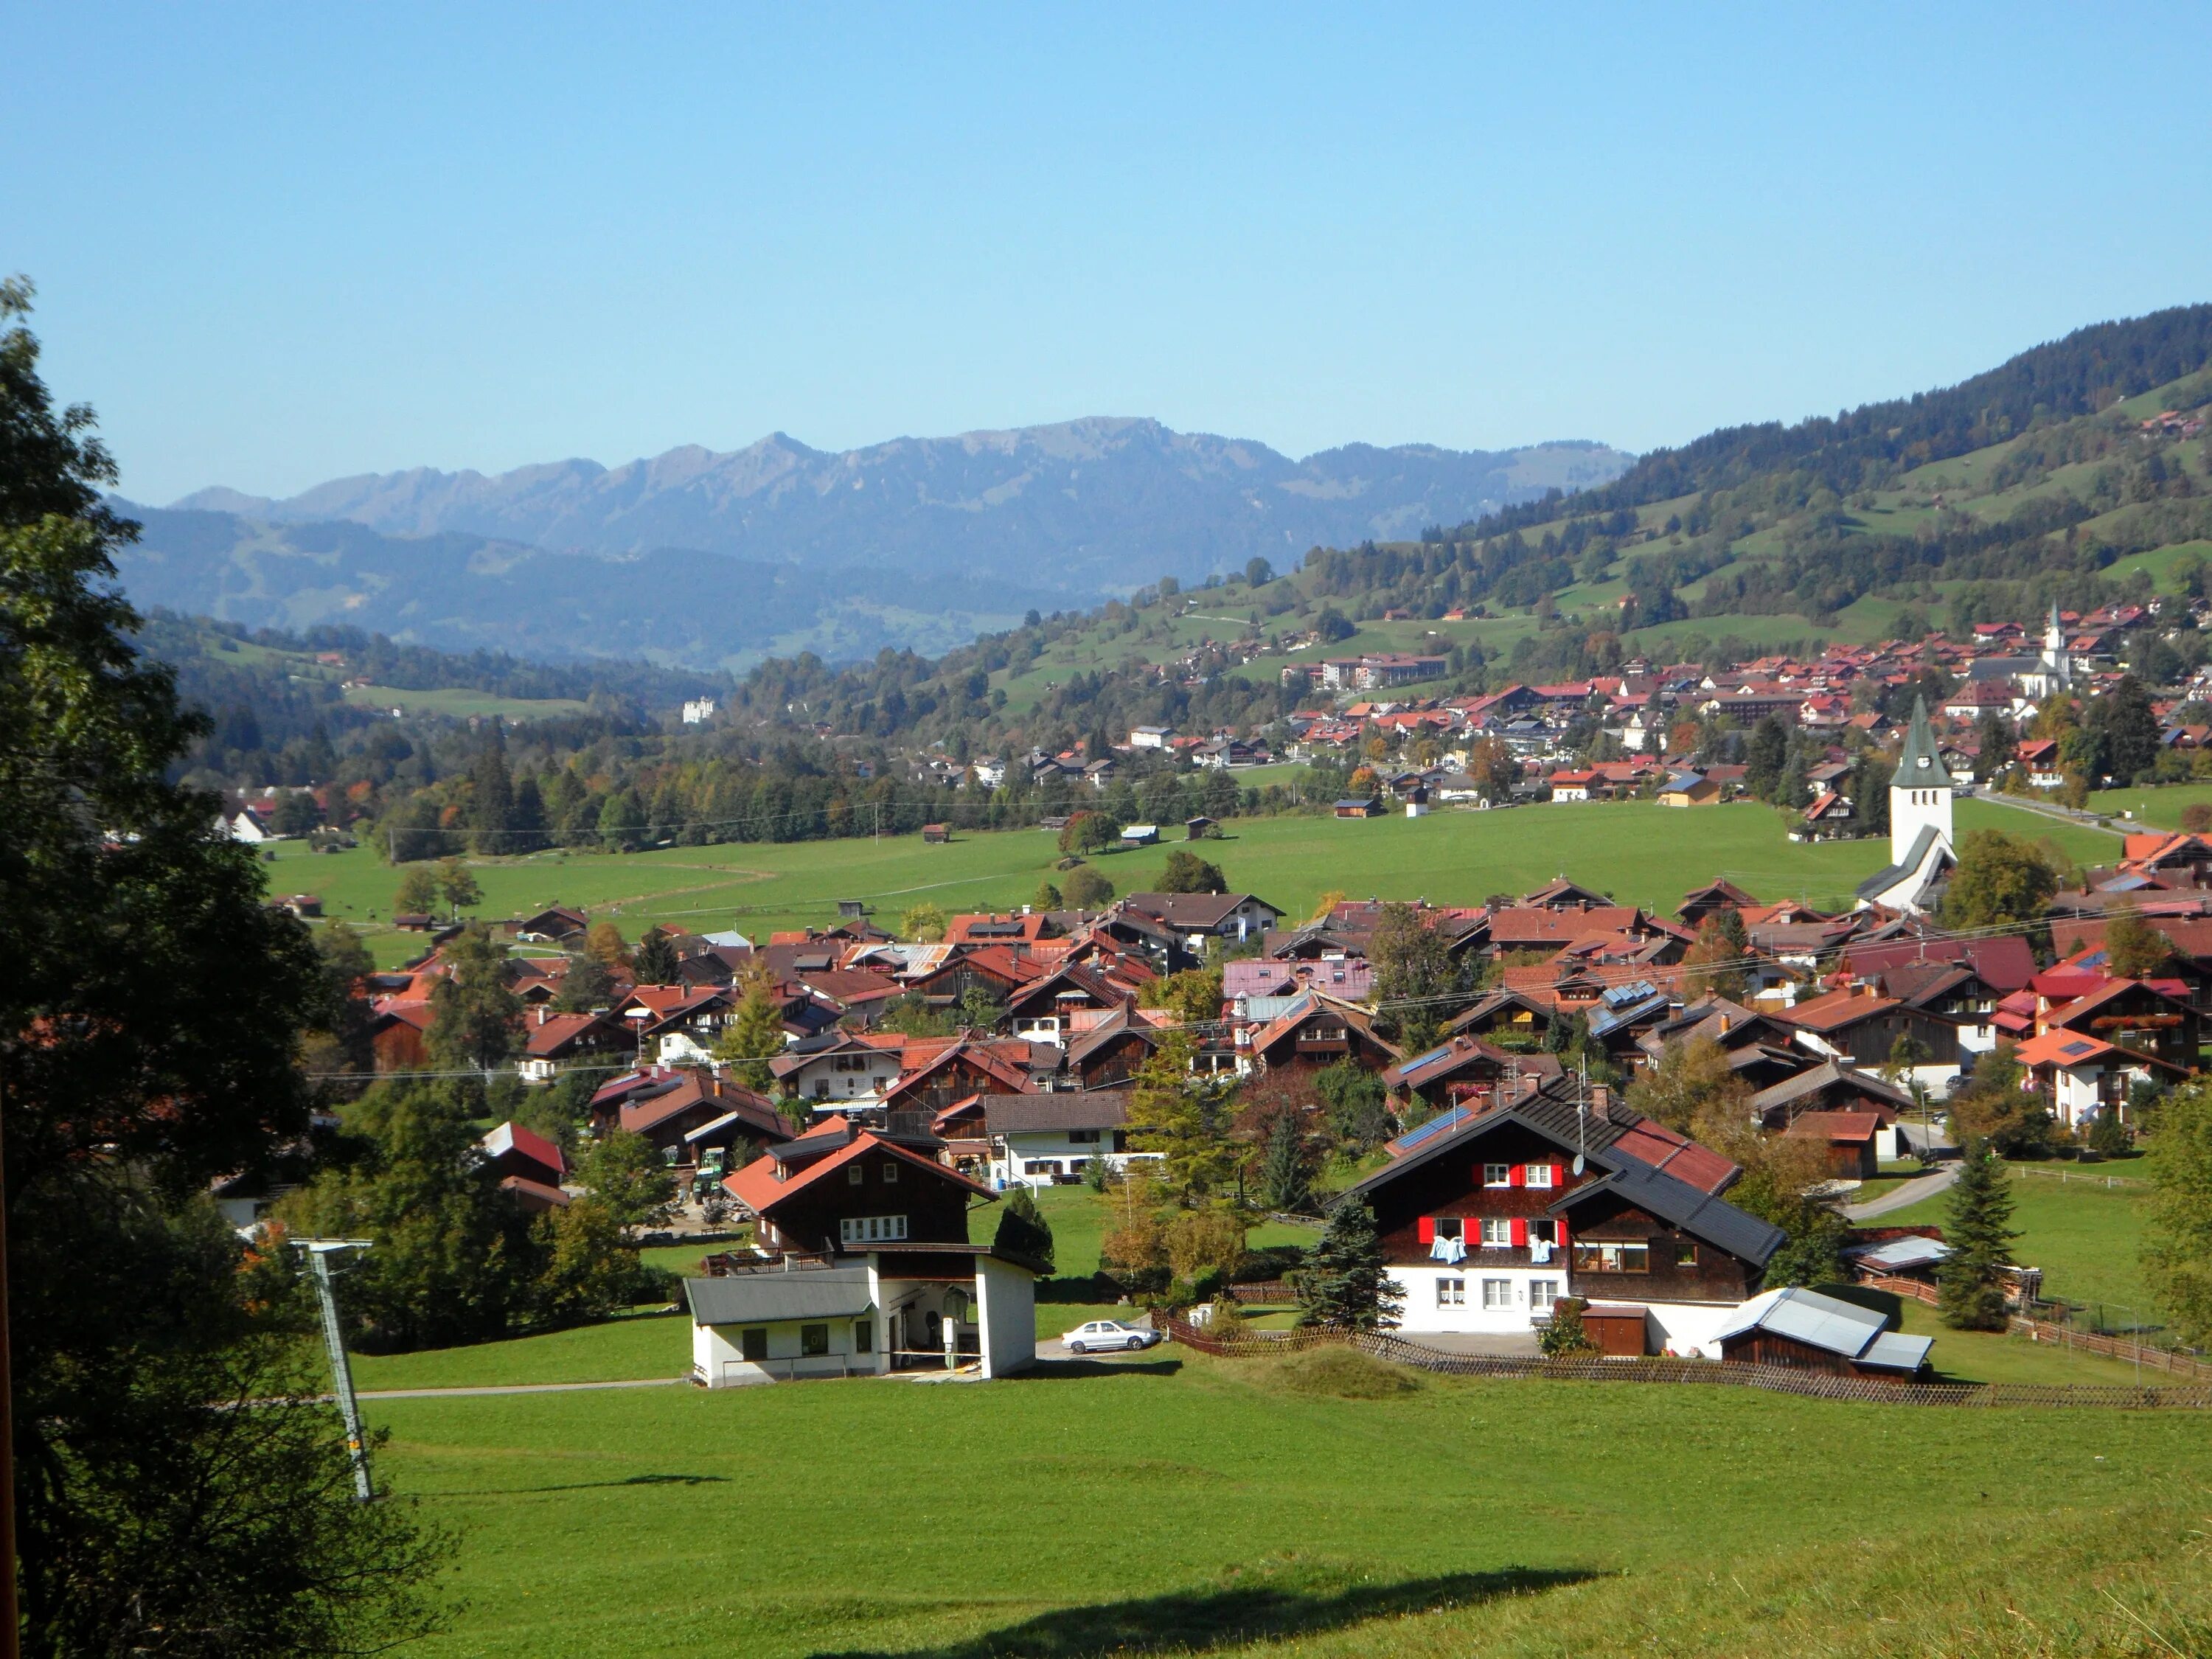 Bad village. Село Обердорф. Долина Альгой. Альгой Бавария. Allgäu Германия.